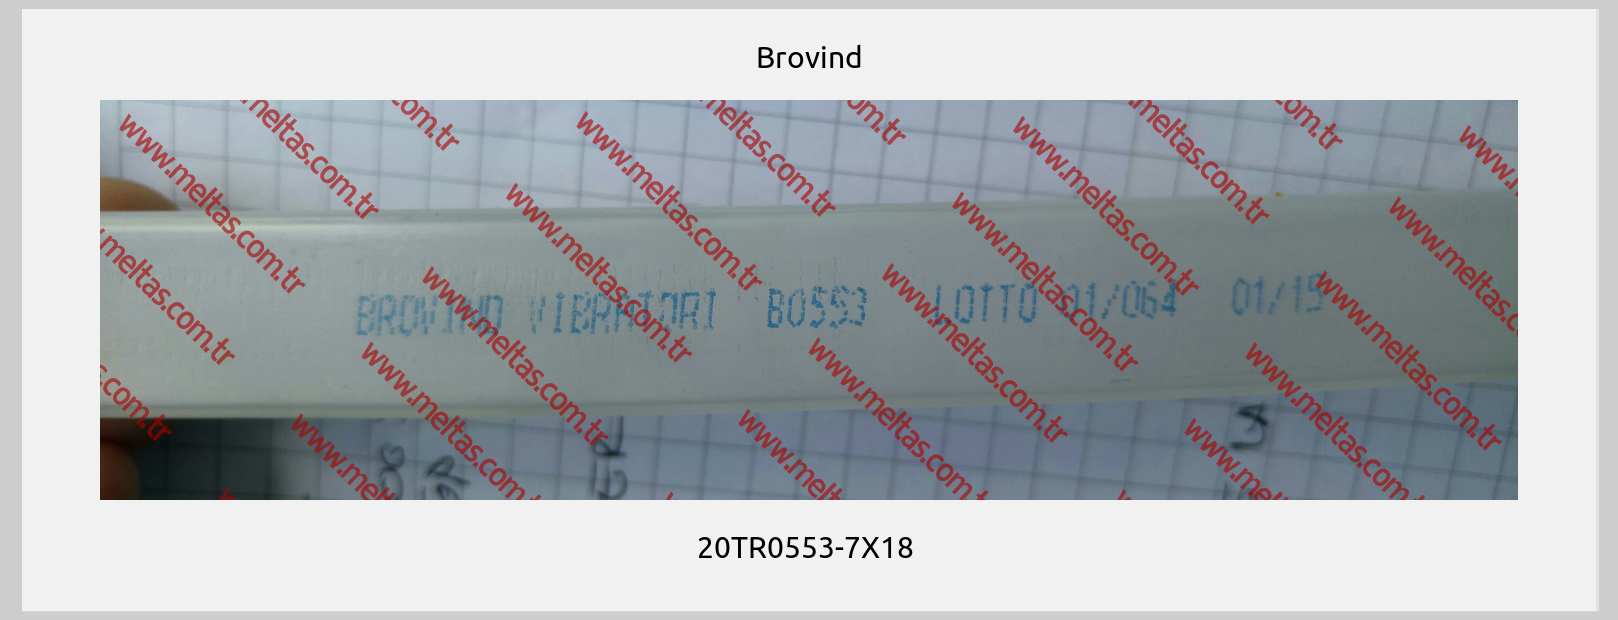 Brovind - 20TR0553-7X18 